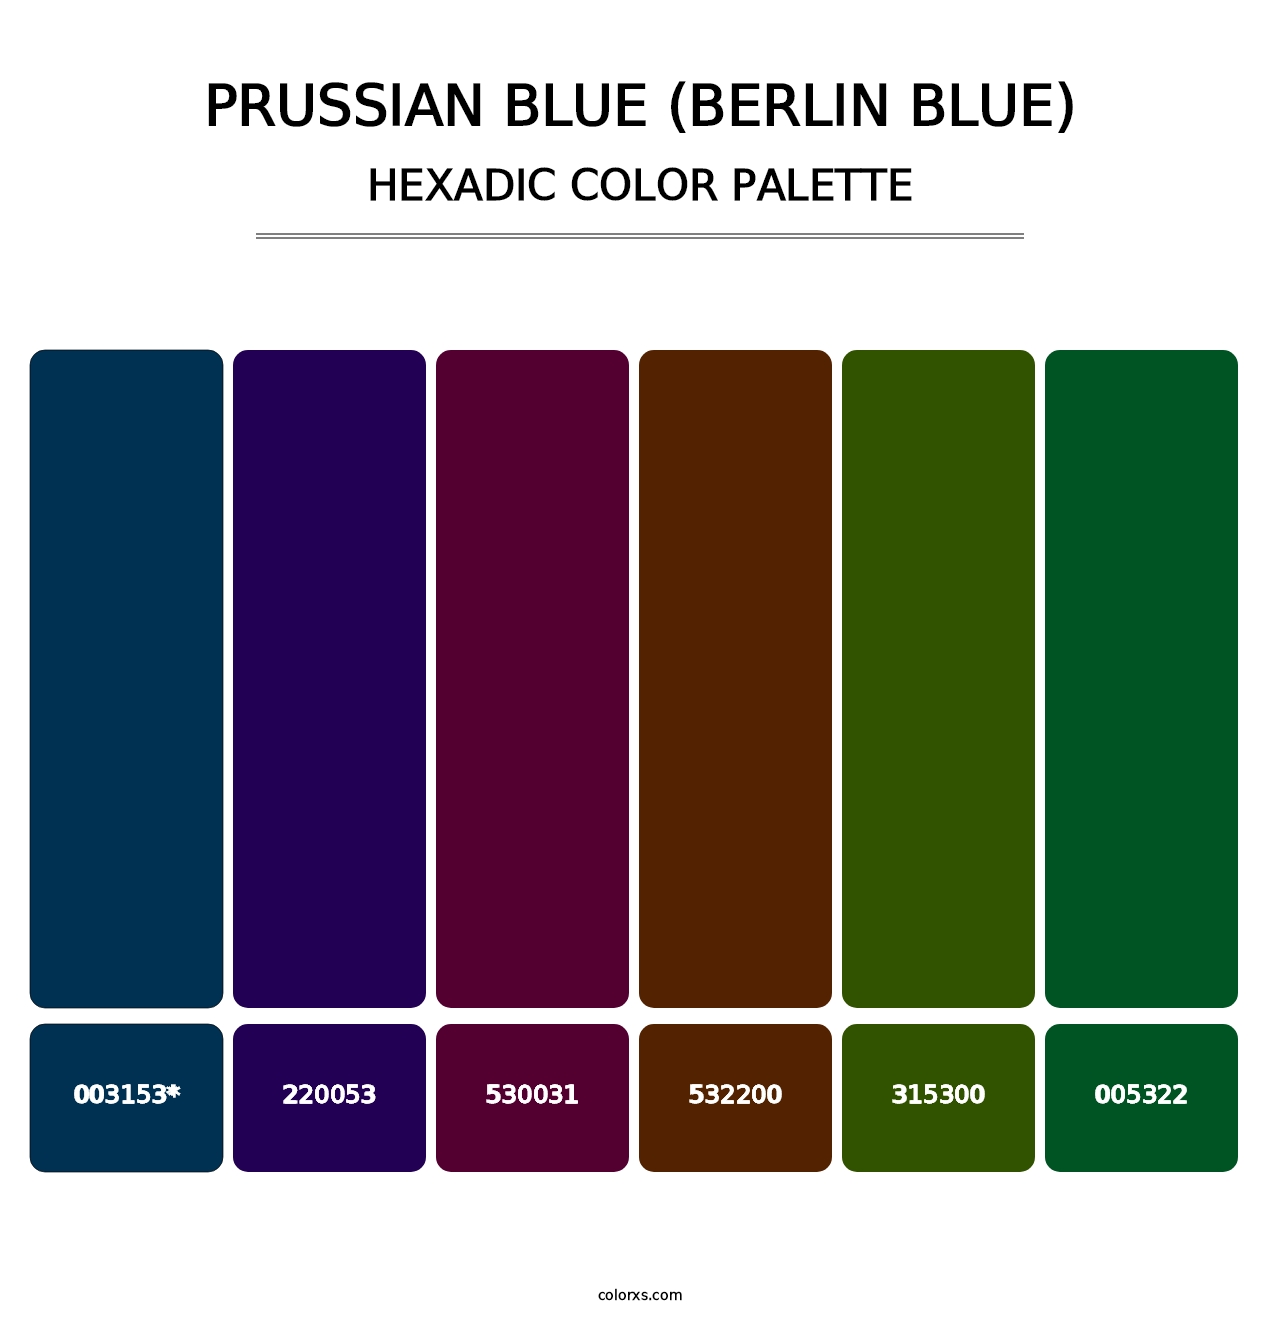 Prussian Blue (Berlin Blue) - Hexadic Color Palette